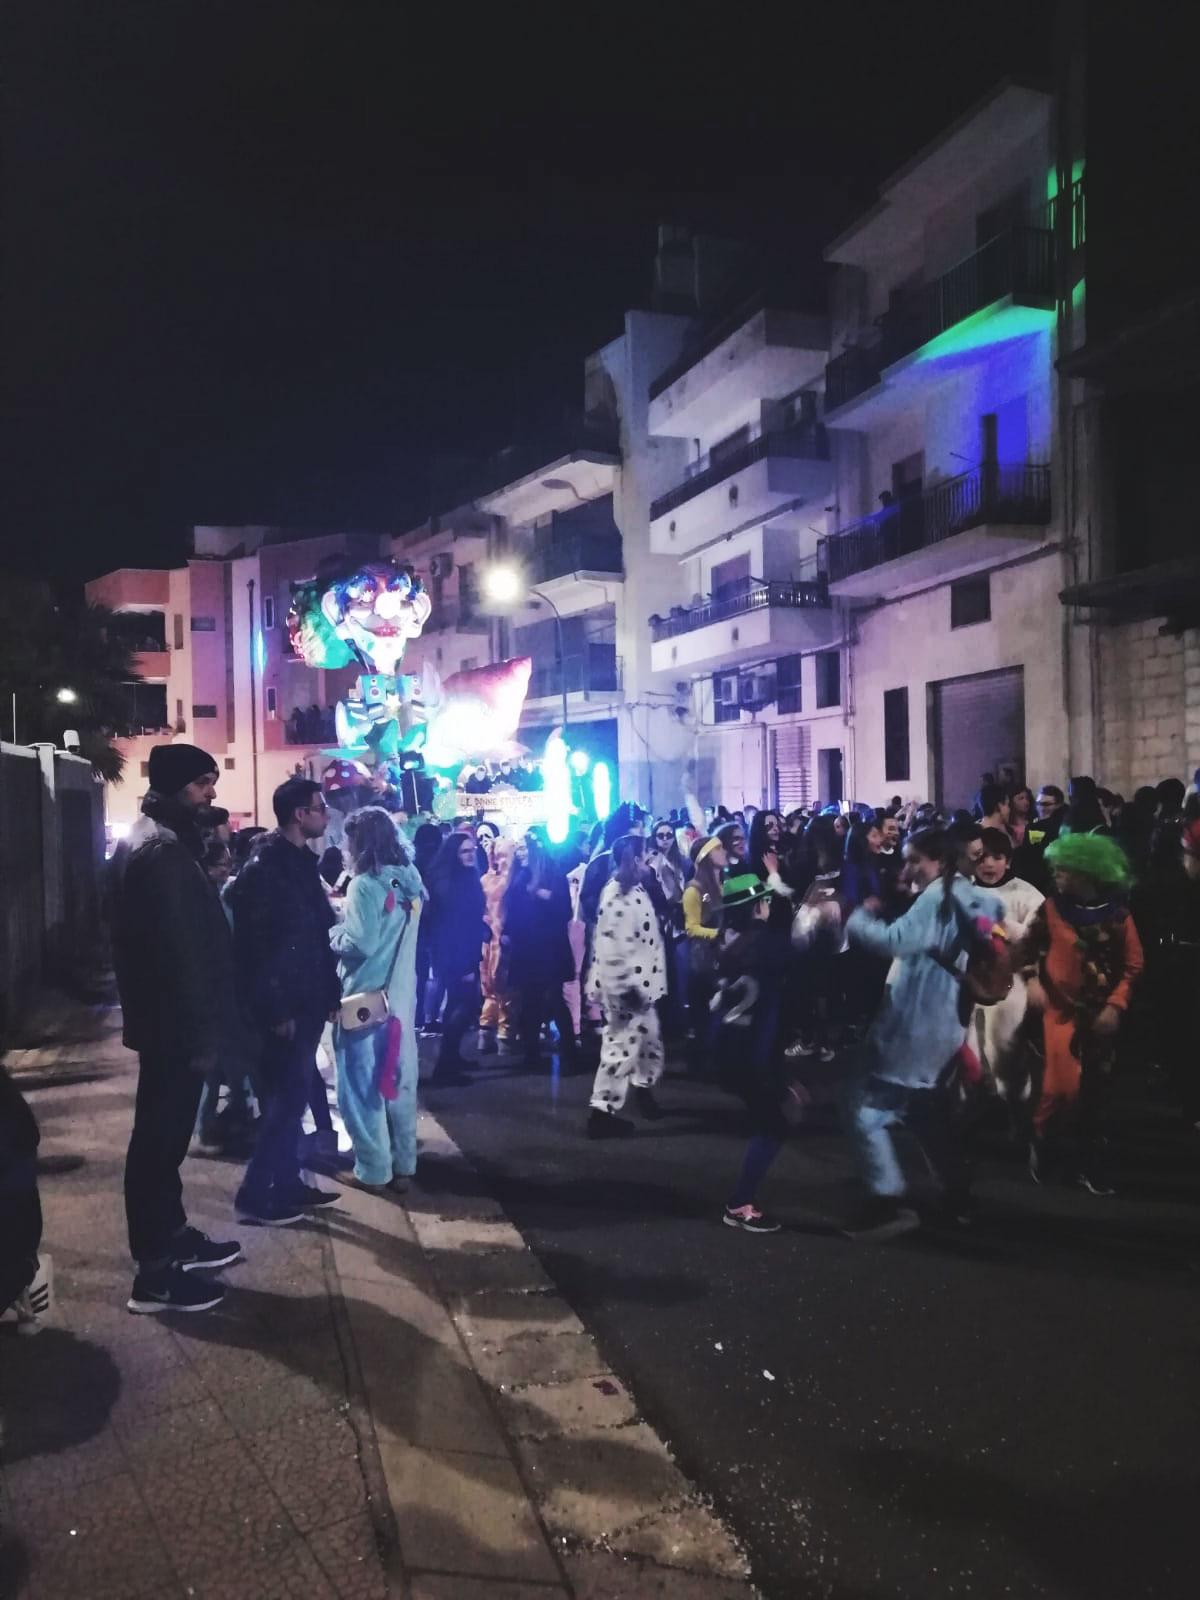 Nella foto di Michela Antezza, persone in maschera durante l'edizione 2019 del Carnevale Montese.